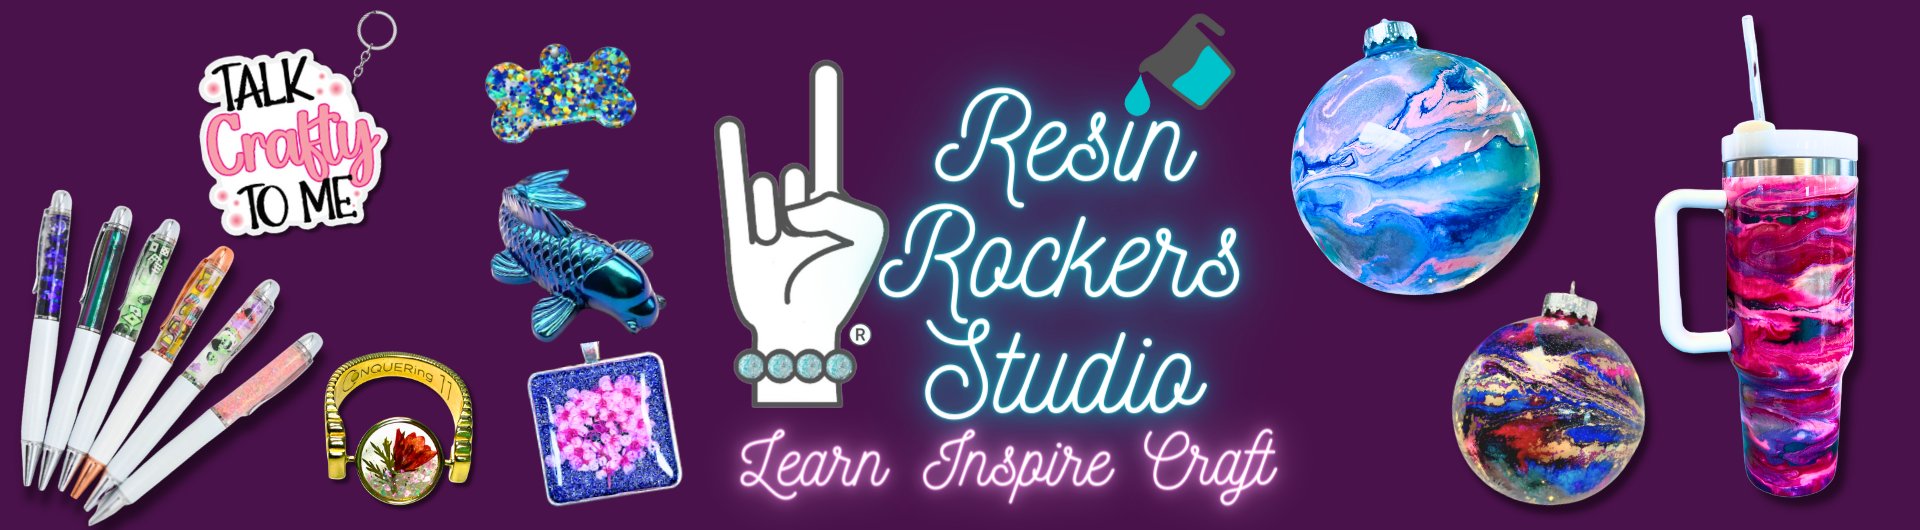 Resin Rockers Studio Classes